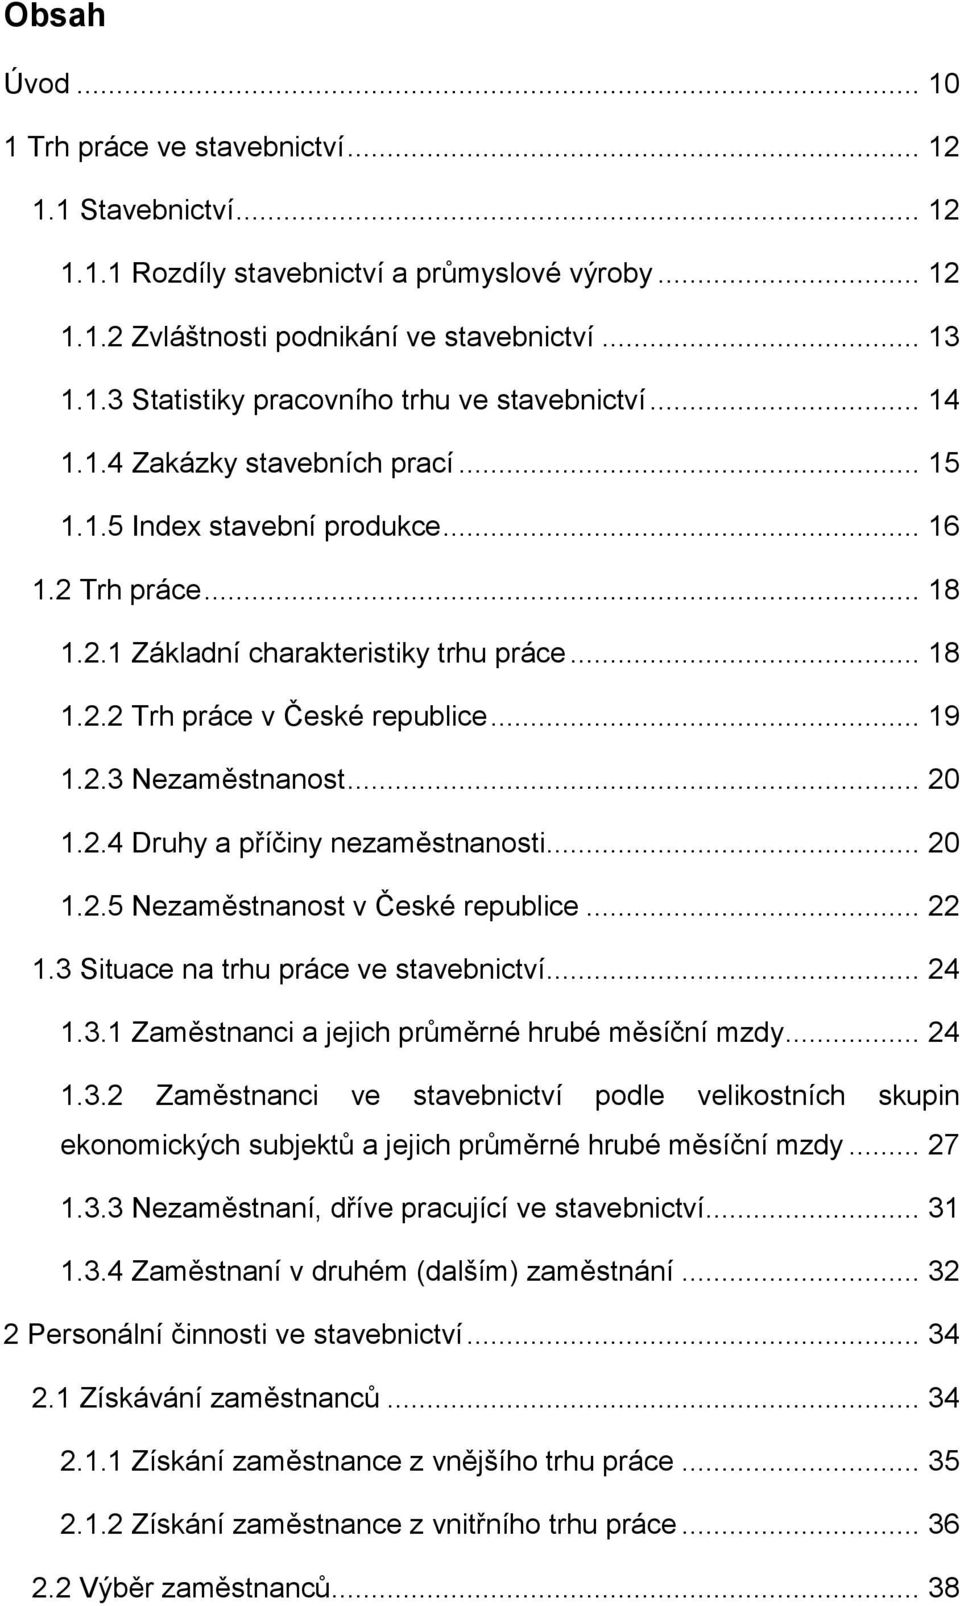 .. 20 1.2.4 Druhy a příčiny nezaměstnanosti... 20 1.2.5 Nezaměstnanost v České republice... 22 1.3 Situace na trhu práce ve stavebnictví... 24 1.3.1 Zaměstnanci a jejich průměrné hrubé měsíční mzdy.